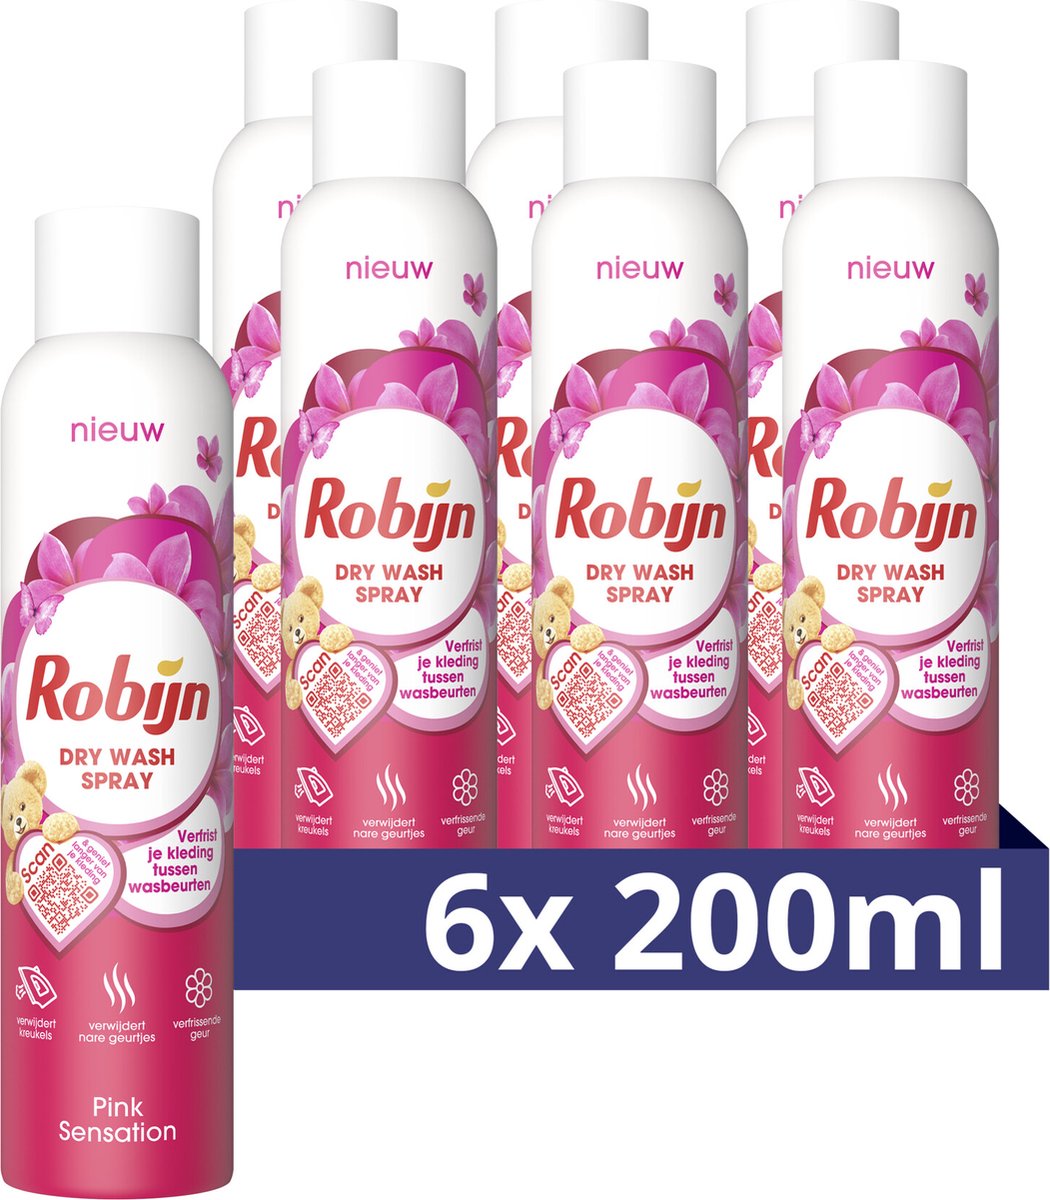 Robijn Pink Sensation Dry Wash Spray - 6 x 200 ml - Voordeelverpakking - Robijn